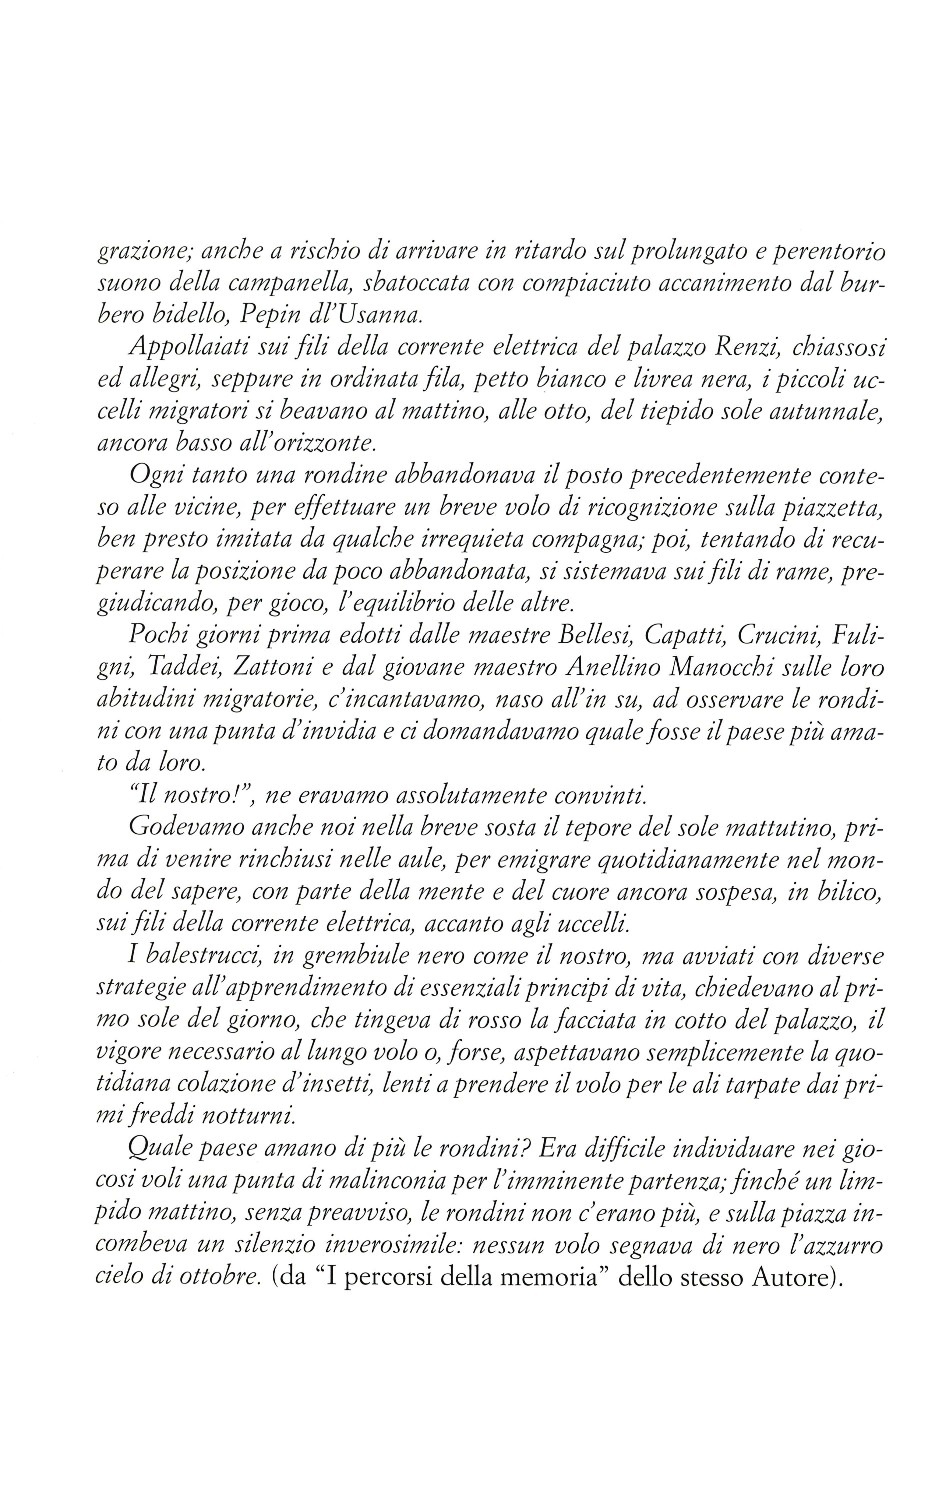 La torr i arduna tutti 2009 p.021